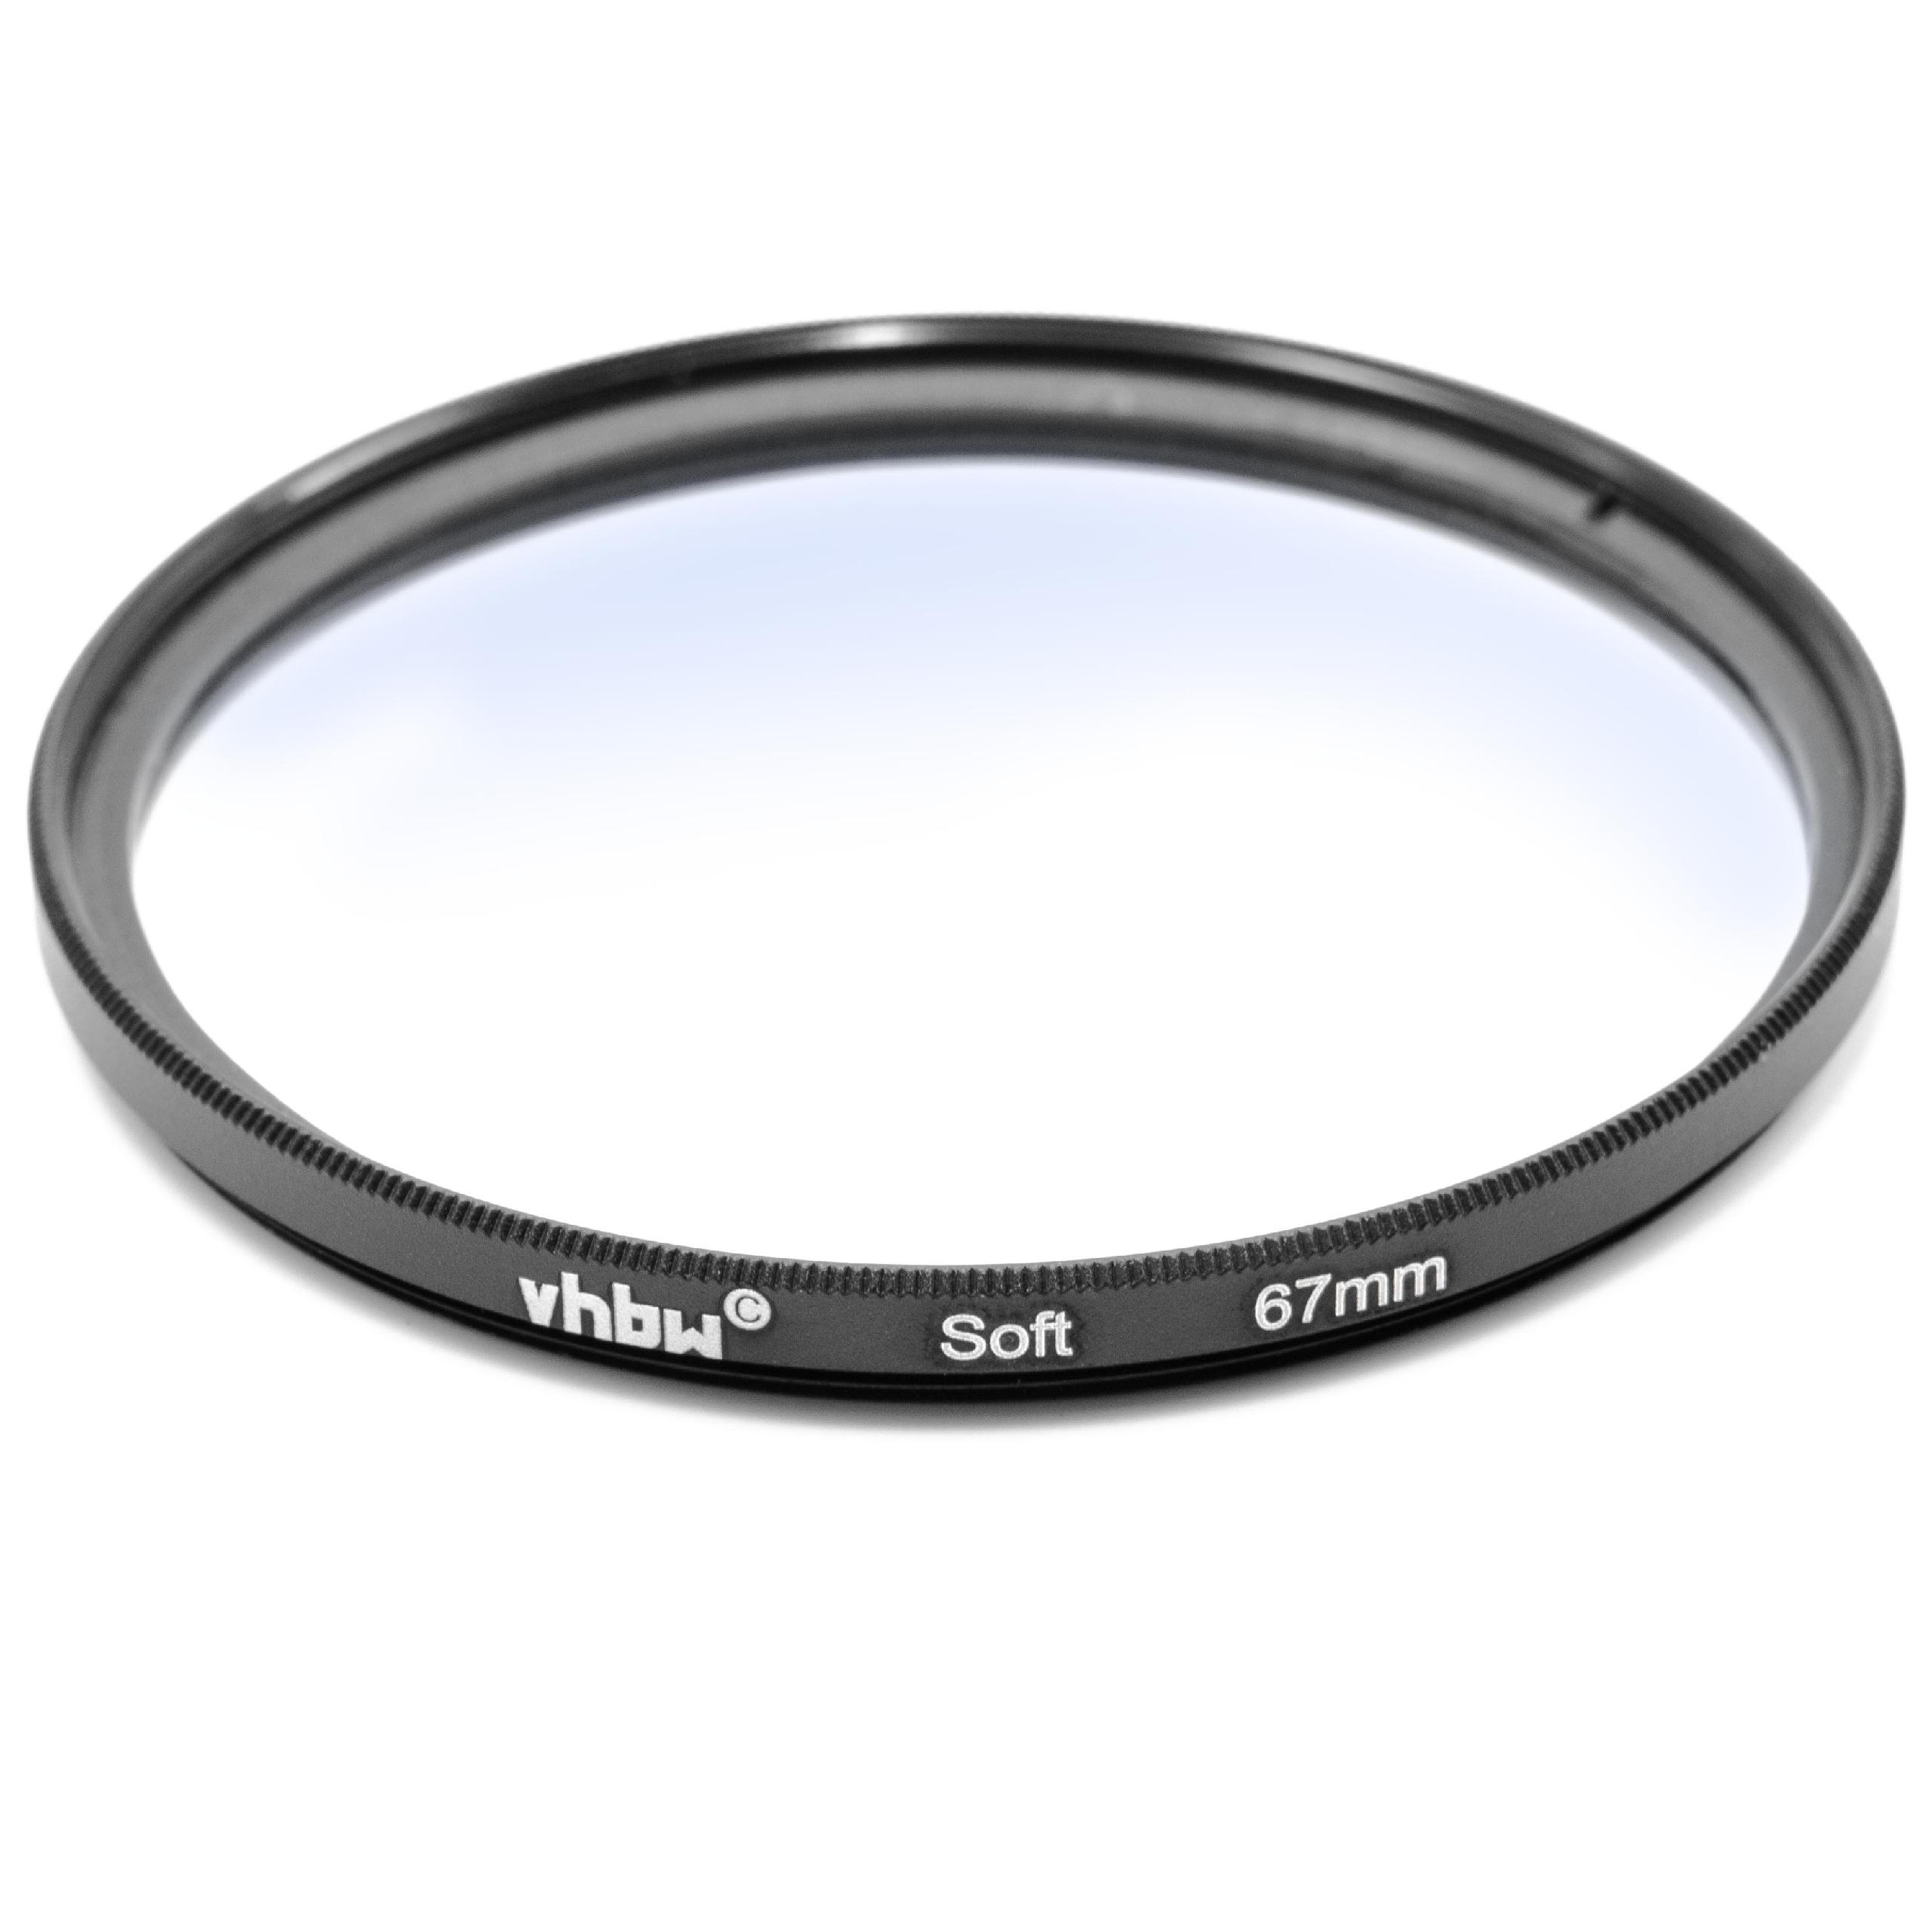 Filtr dyfuzyjny 67mm na obiektyw do różnych aparatów - filtr soft focus